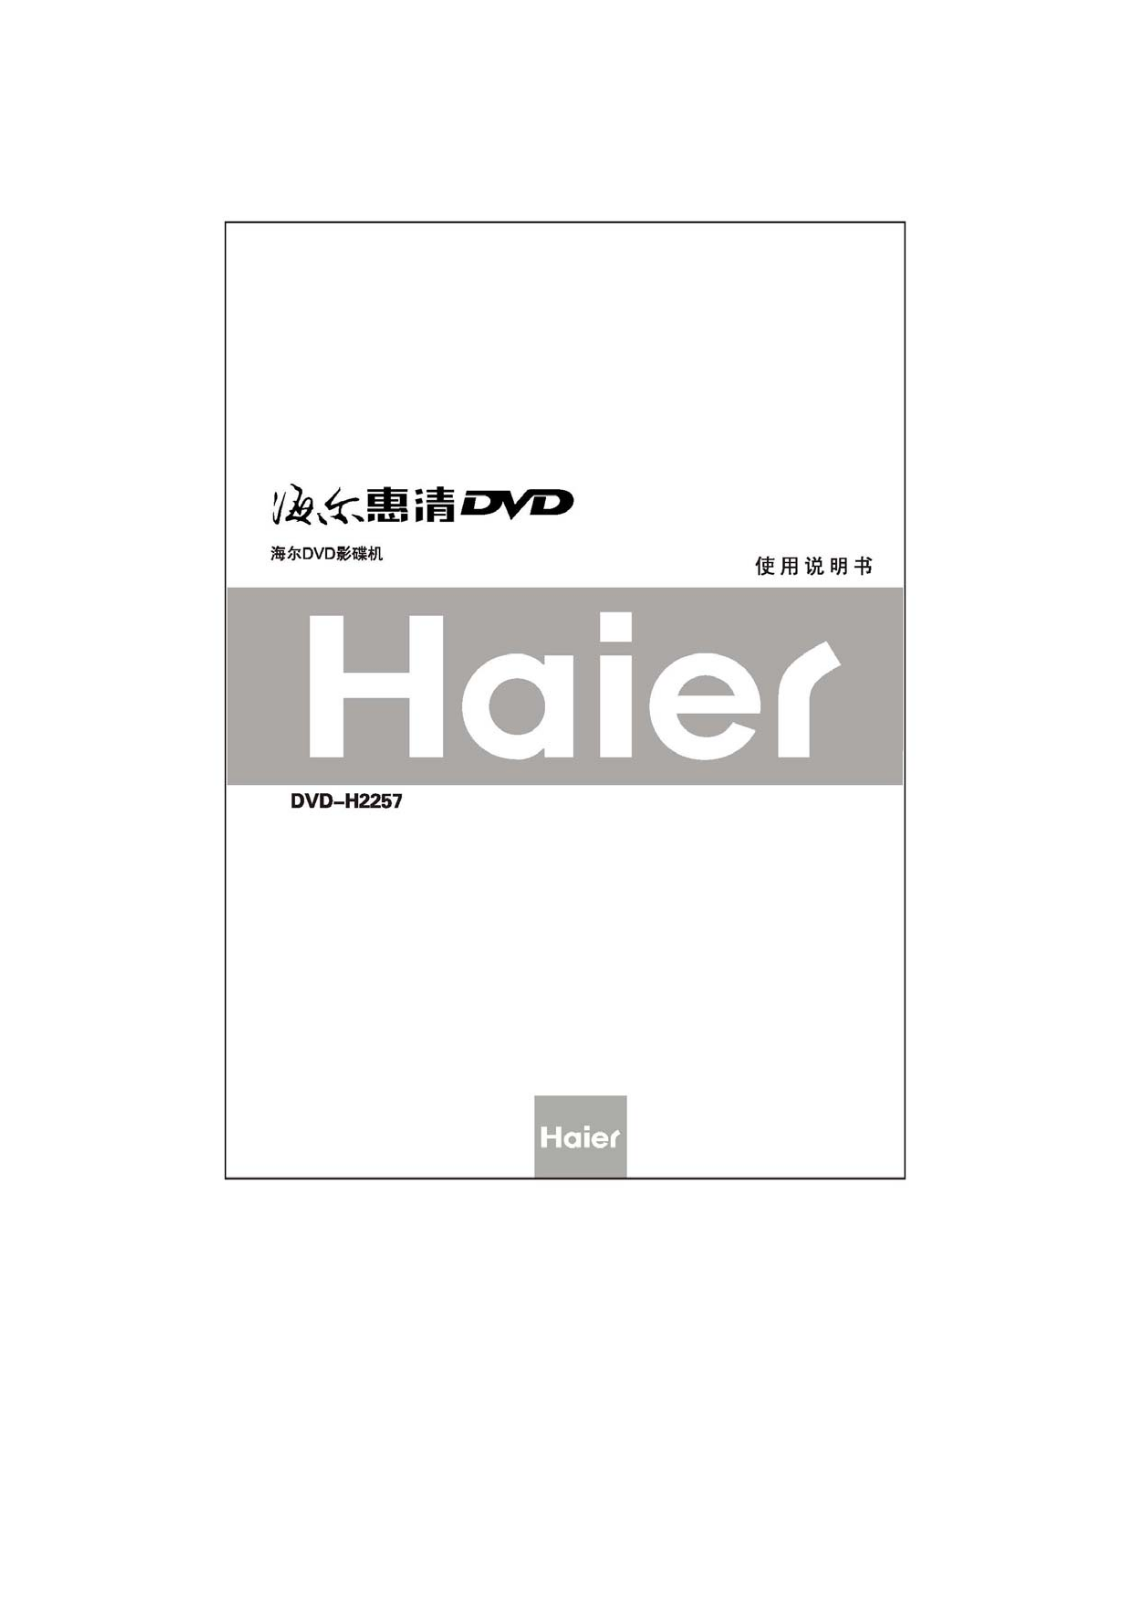 Haier DVD-H2257 User Manual